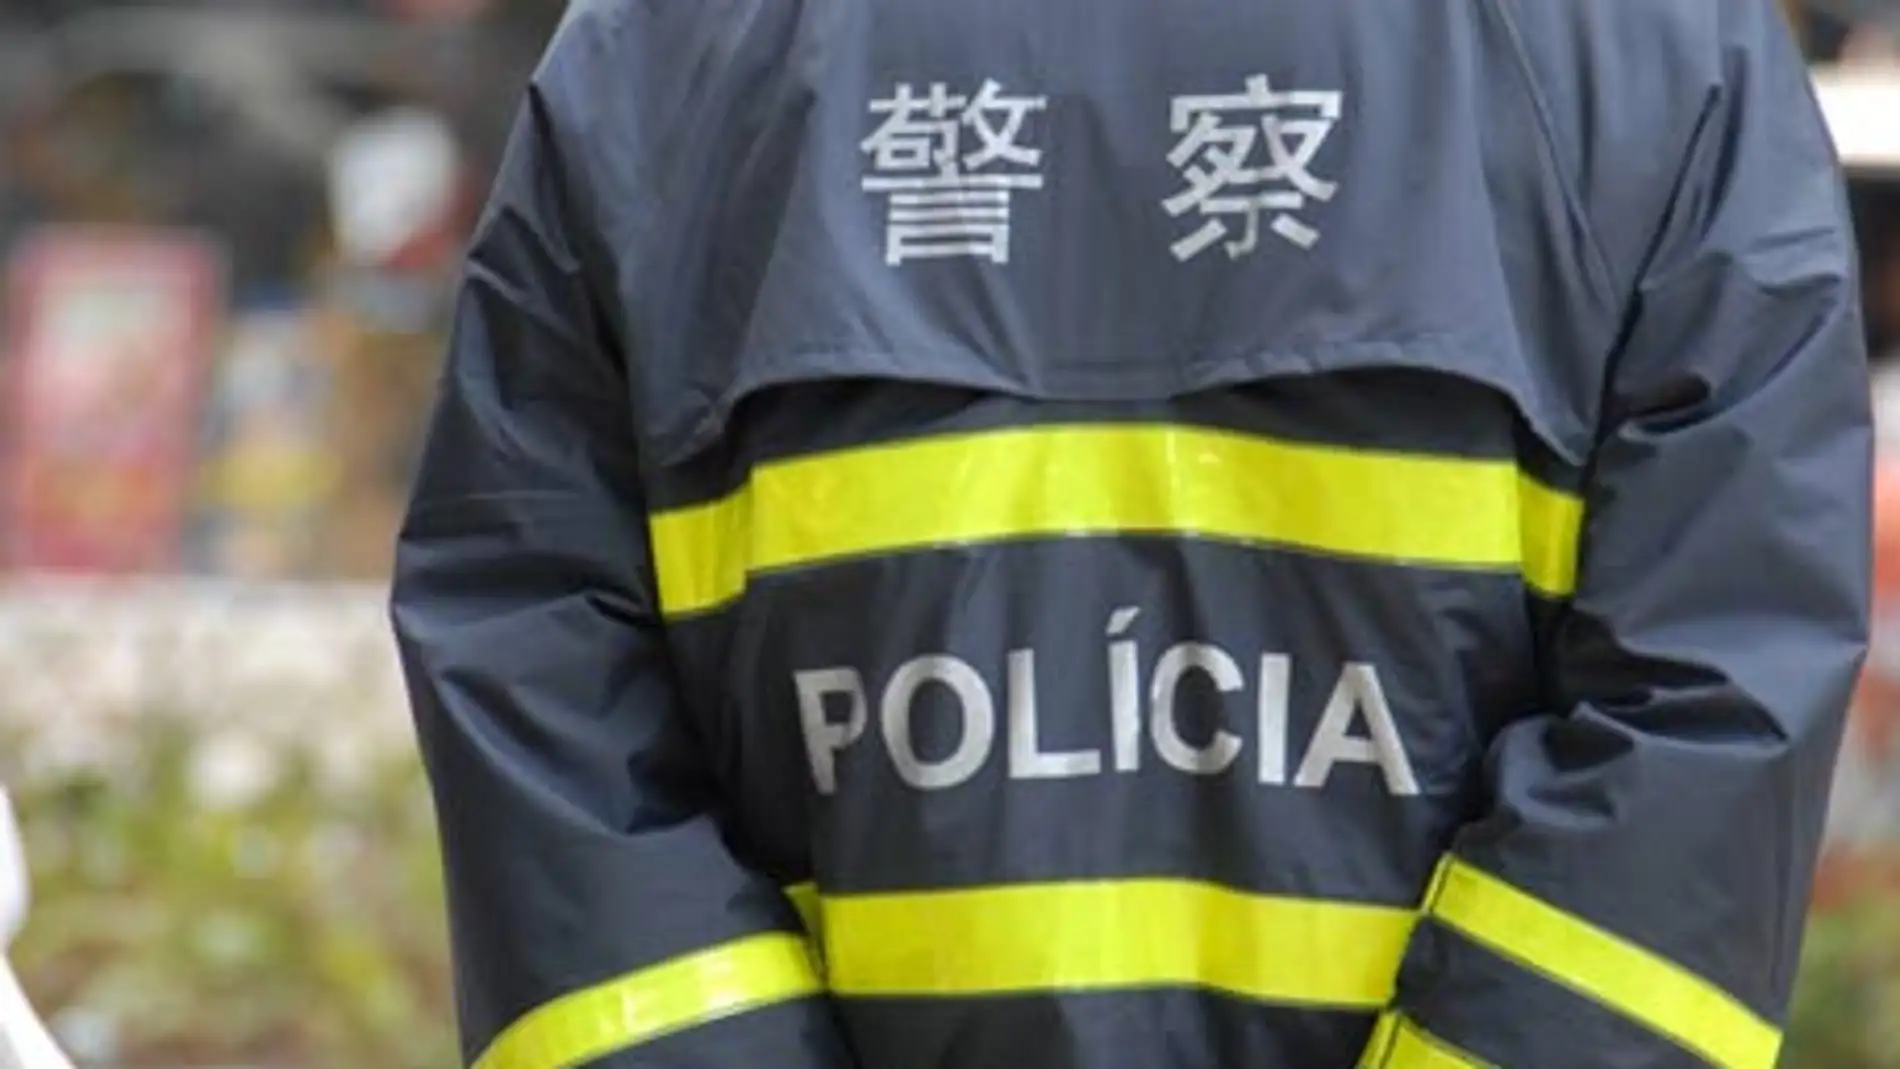 Policía China